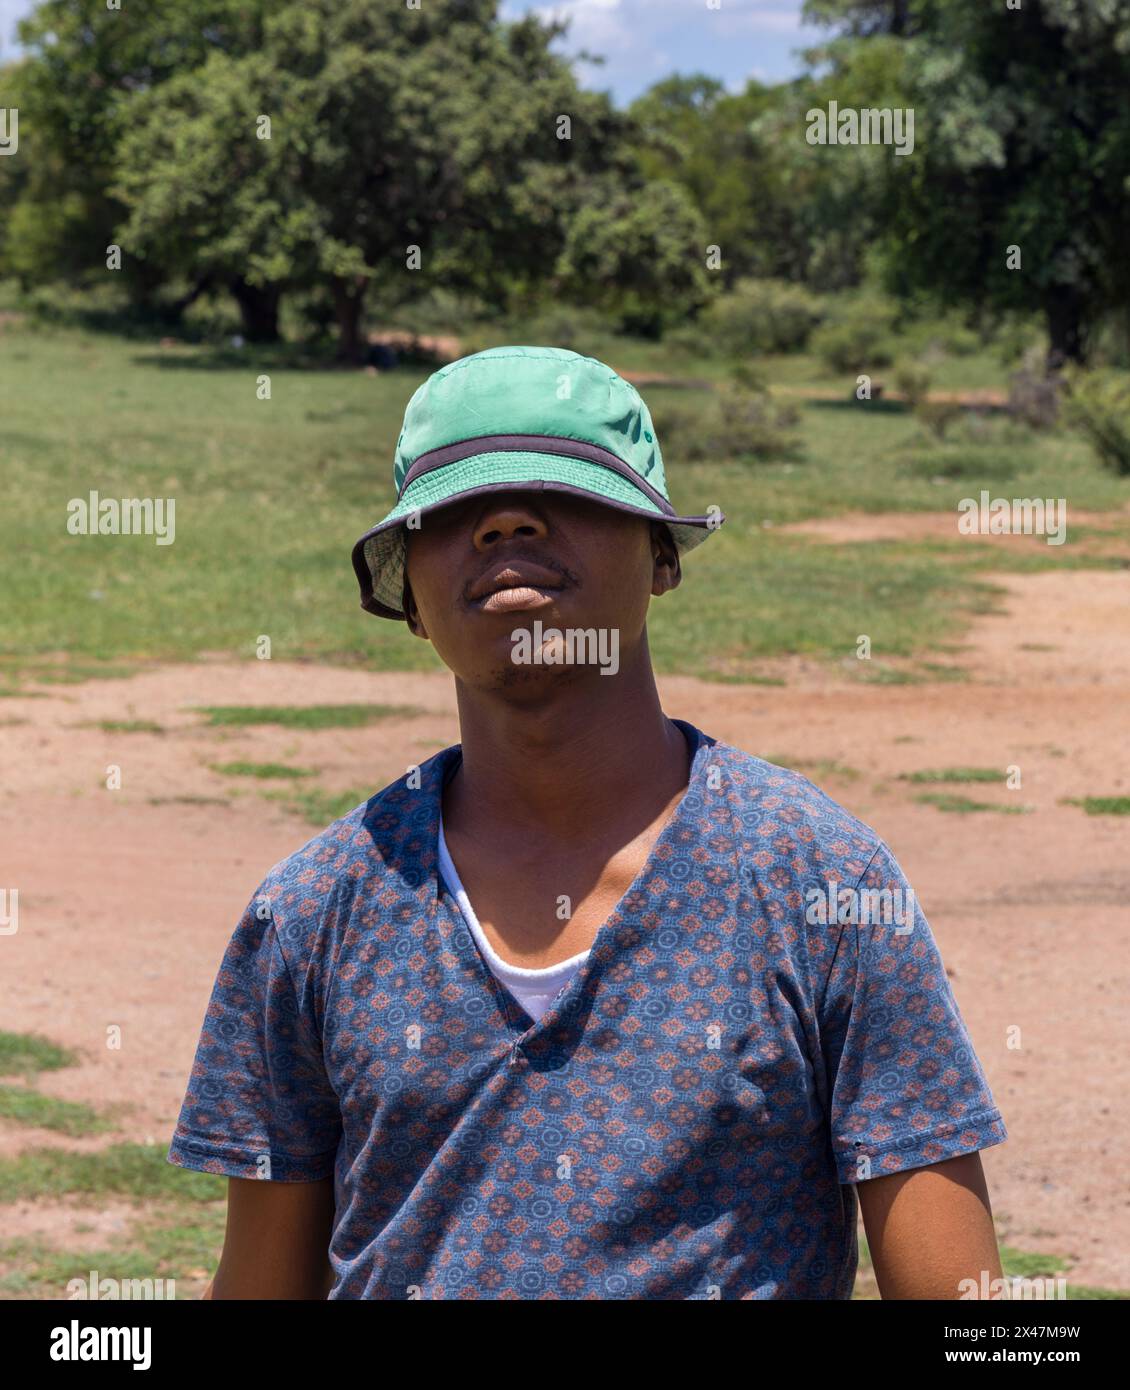 jeune homme africain avec un chapeau tiré sur les yeux, village africain, dans la brousse, protection solaire Banque D'Images